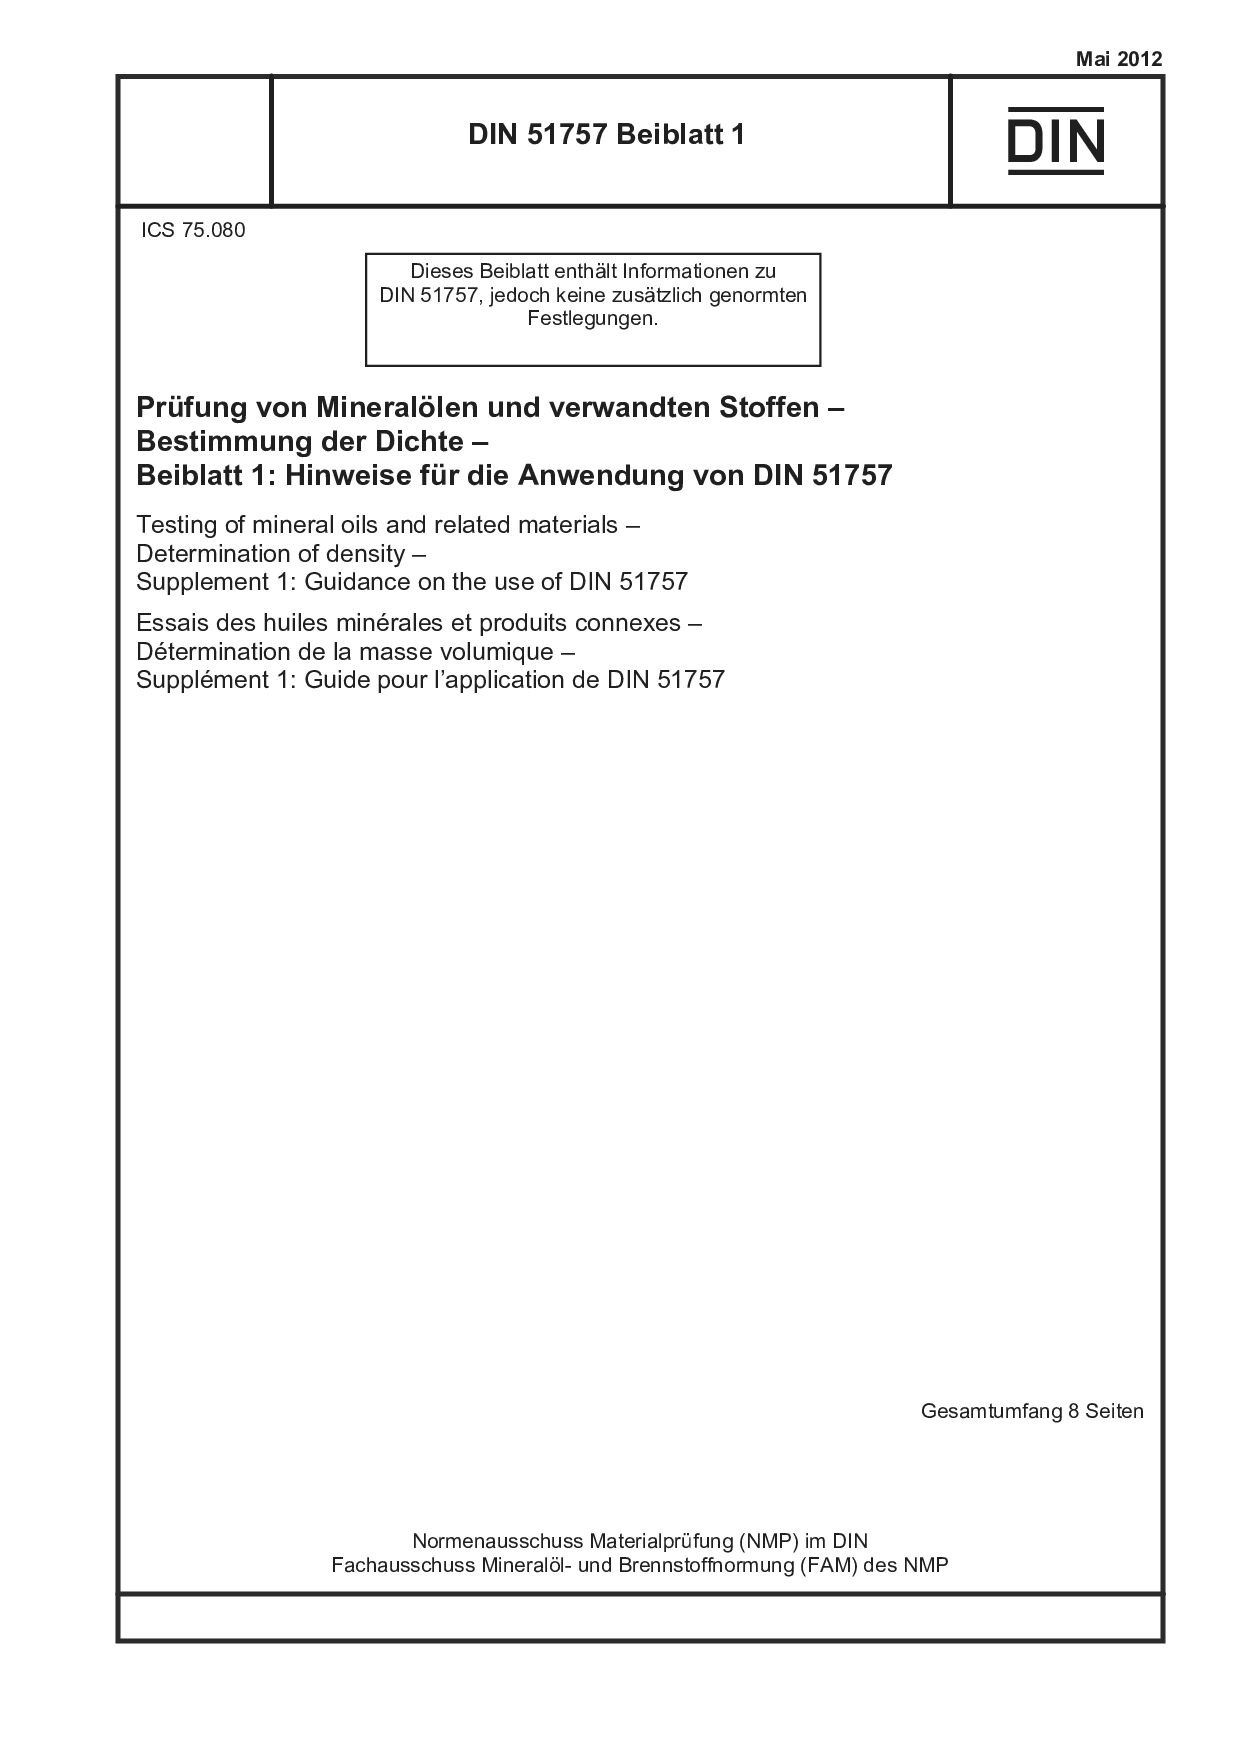 DIN 51757 Beiblatt 1:2012-05封面图